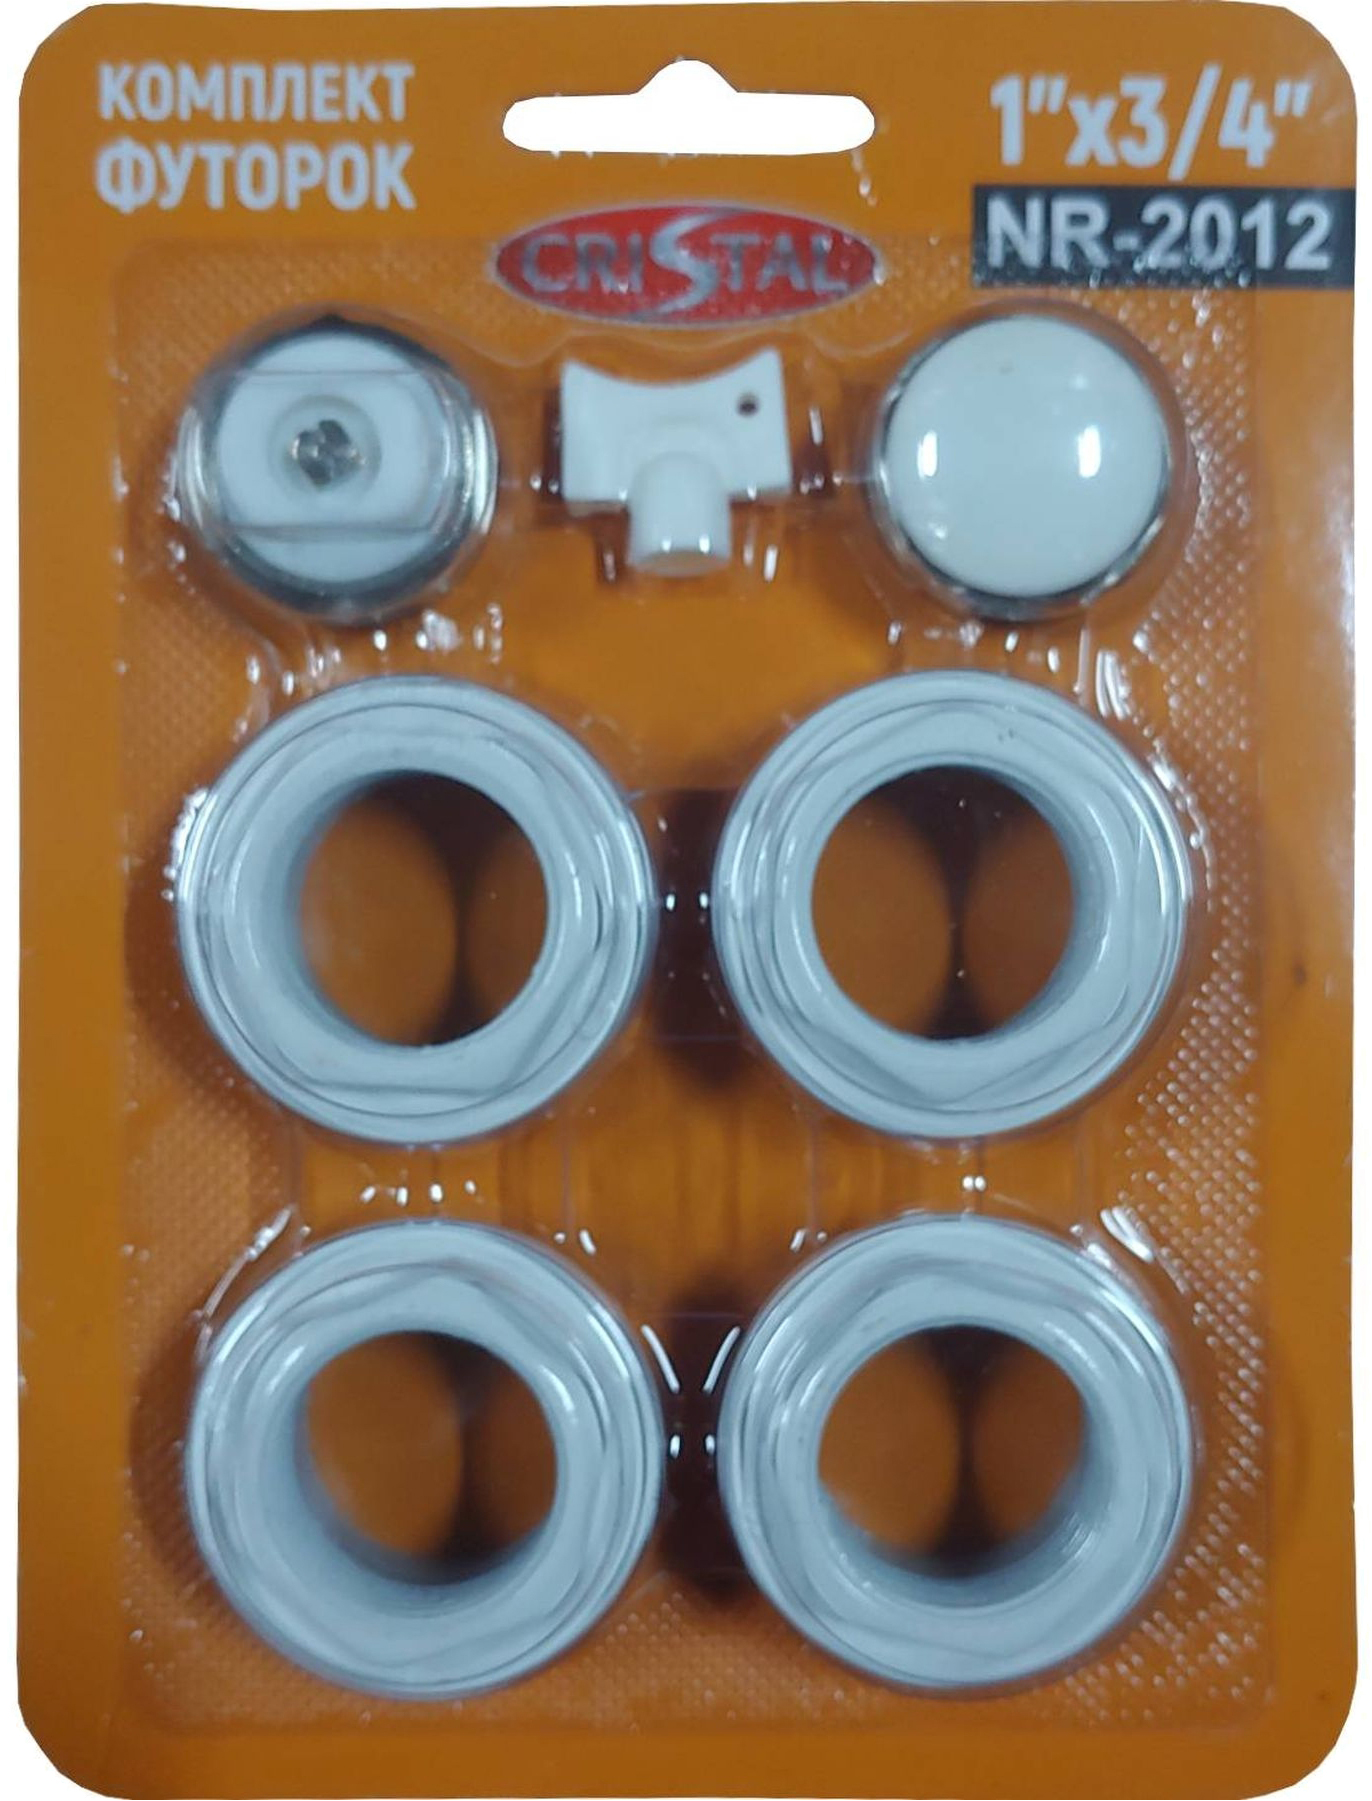 Комплект футорок секционного радиатора Cristal NR-2012 3/4″(HT 404)